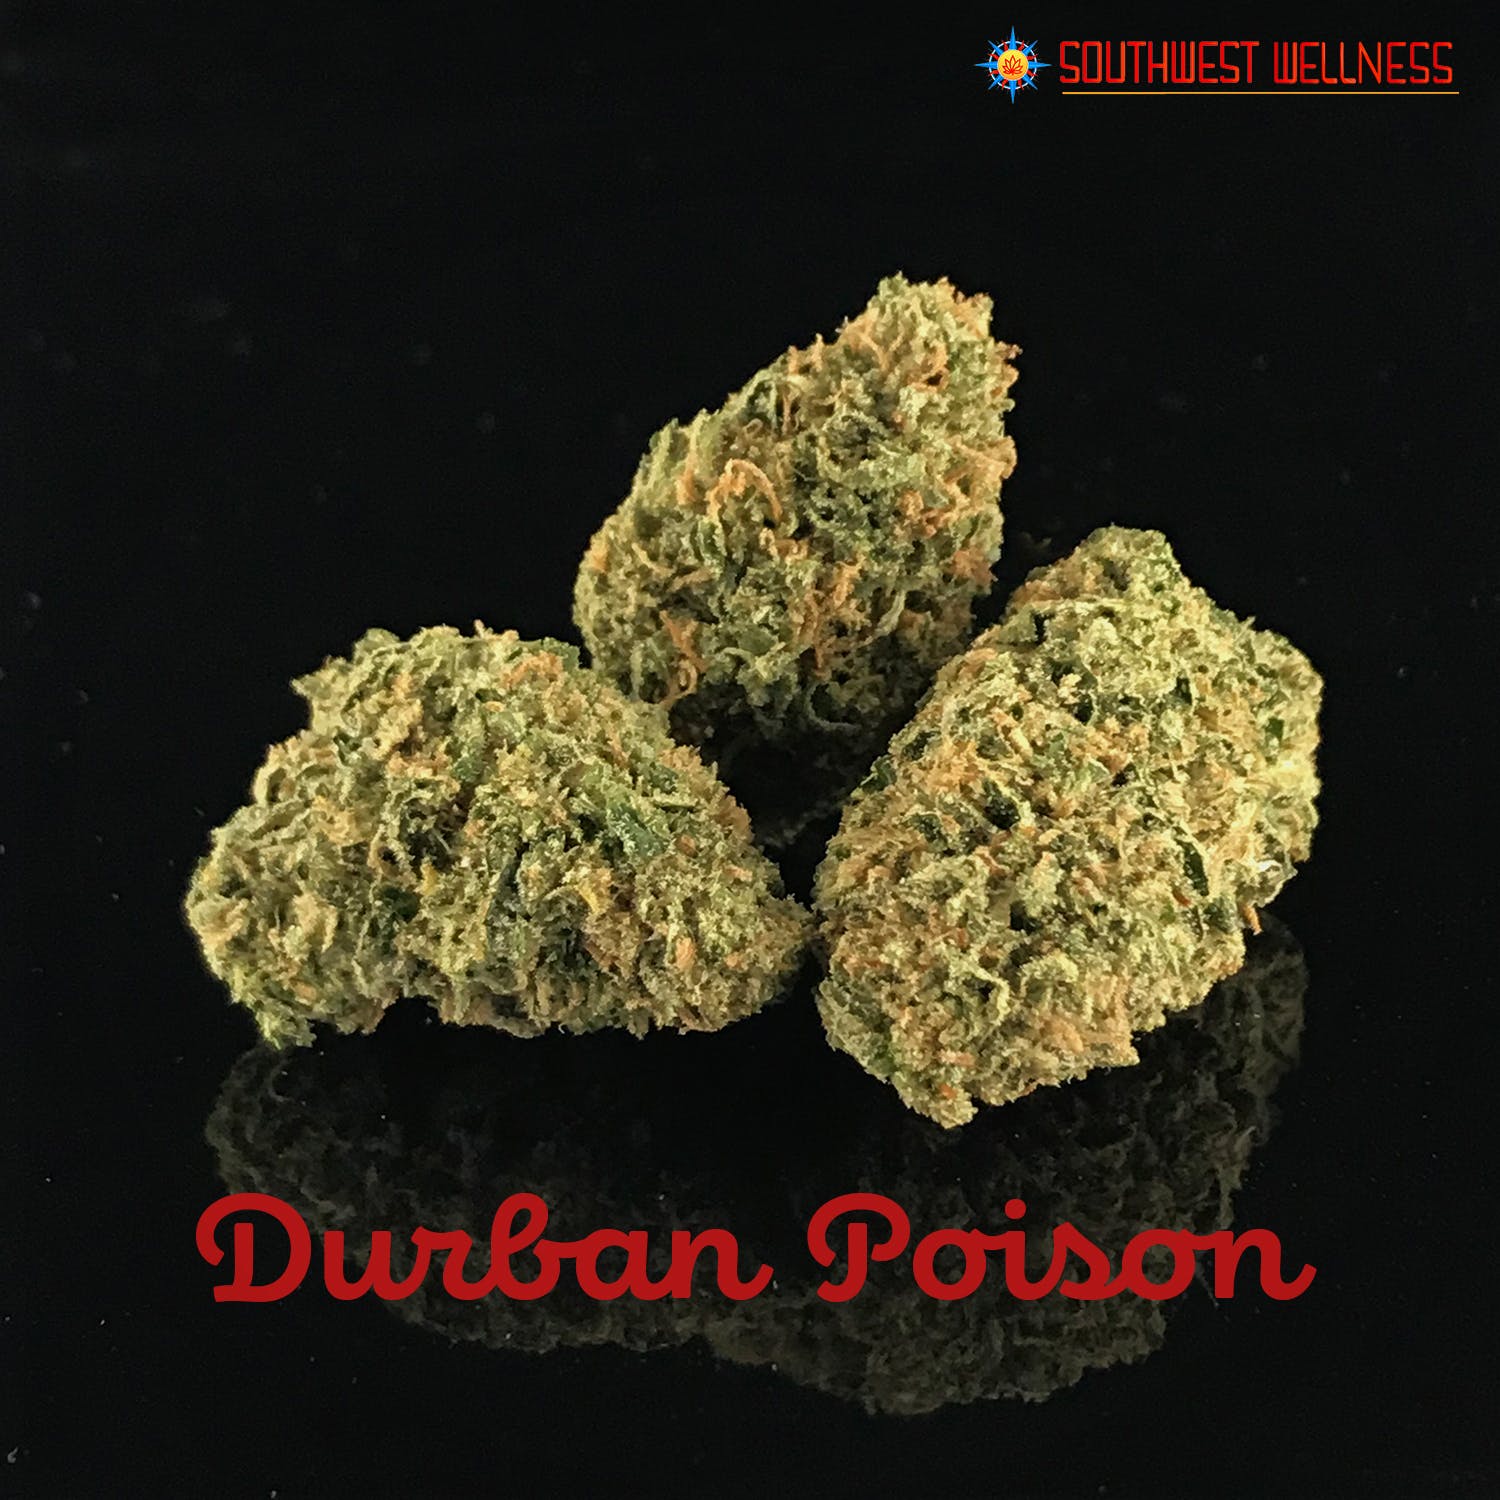 marijuana-dispensaries-9132-montgomery-blvd-ne-albuquerque-durban-poison-22-1-25-thc